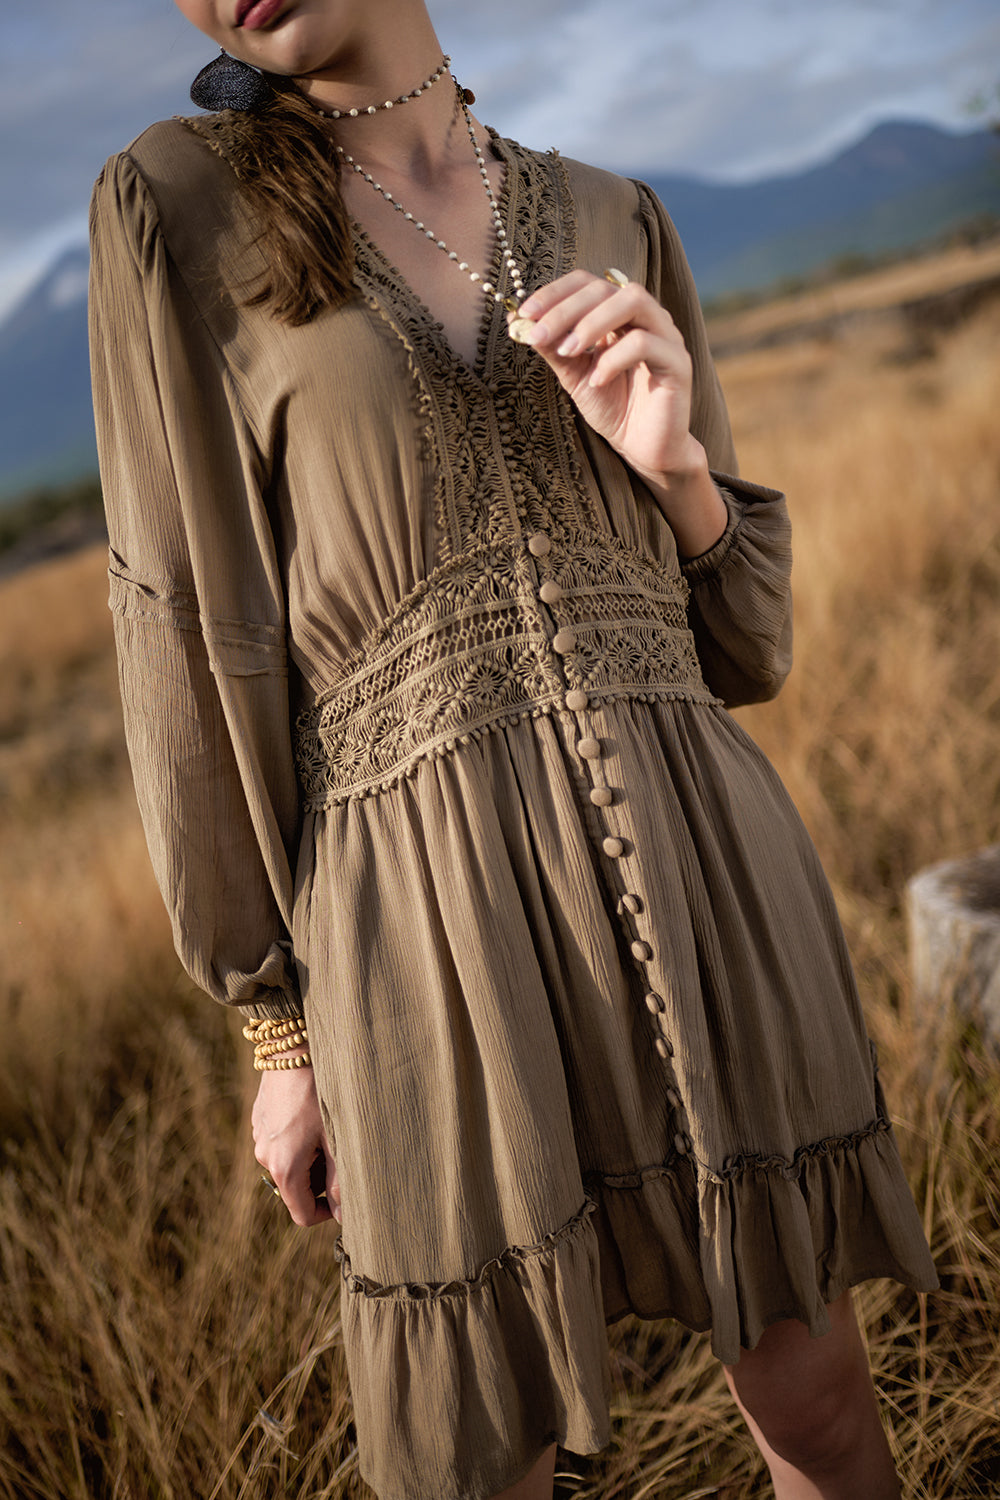 Maribelle Dress - Desert Sand - The Fields of Gold by Tulle and Batiste